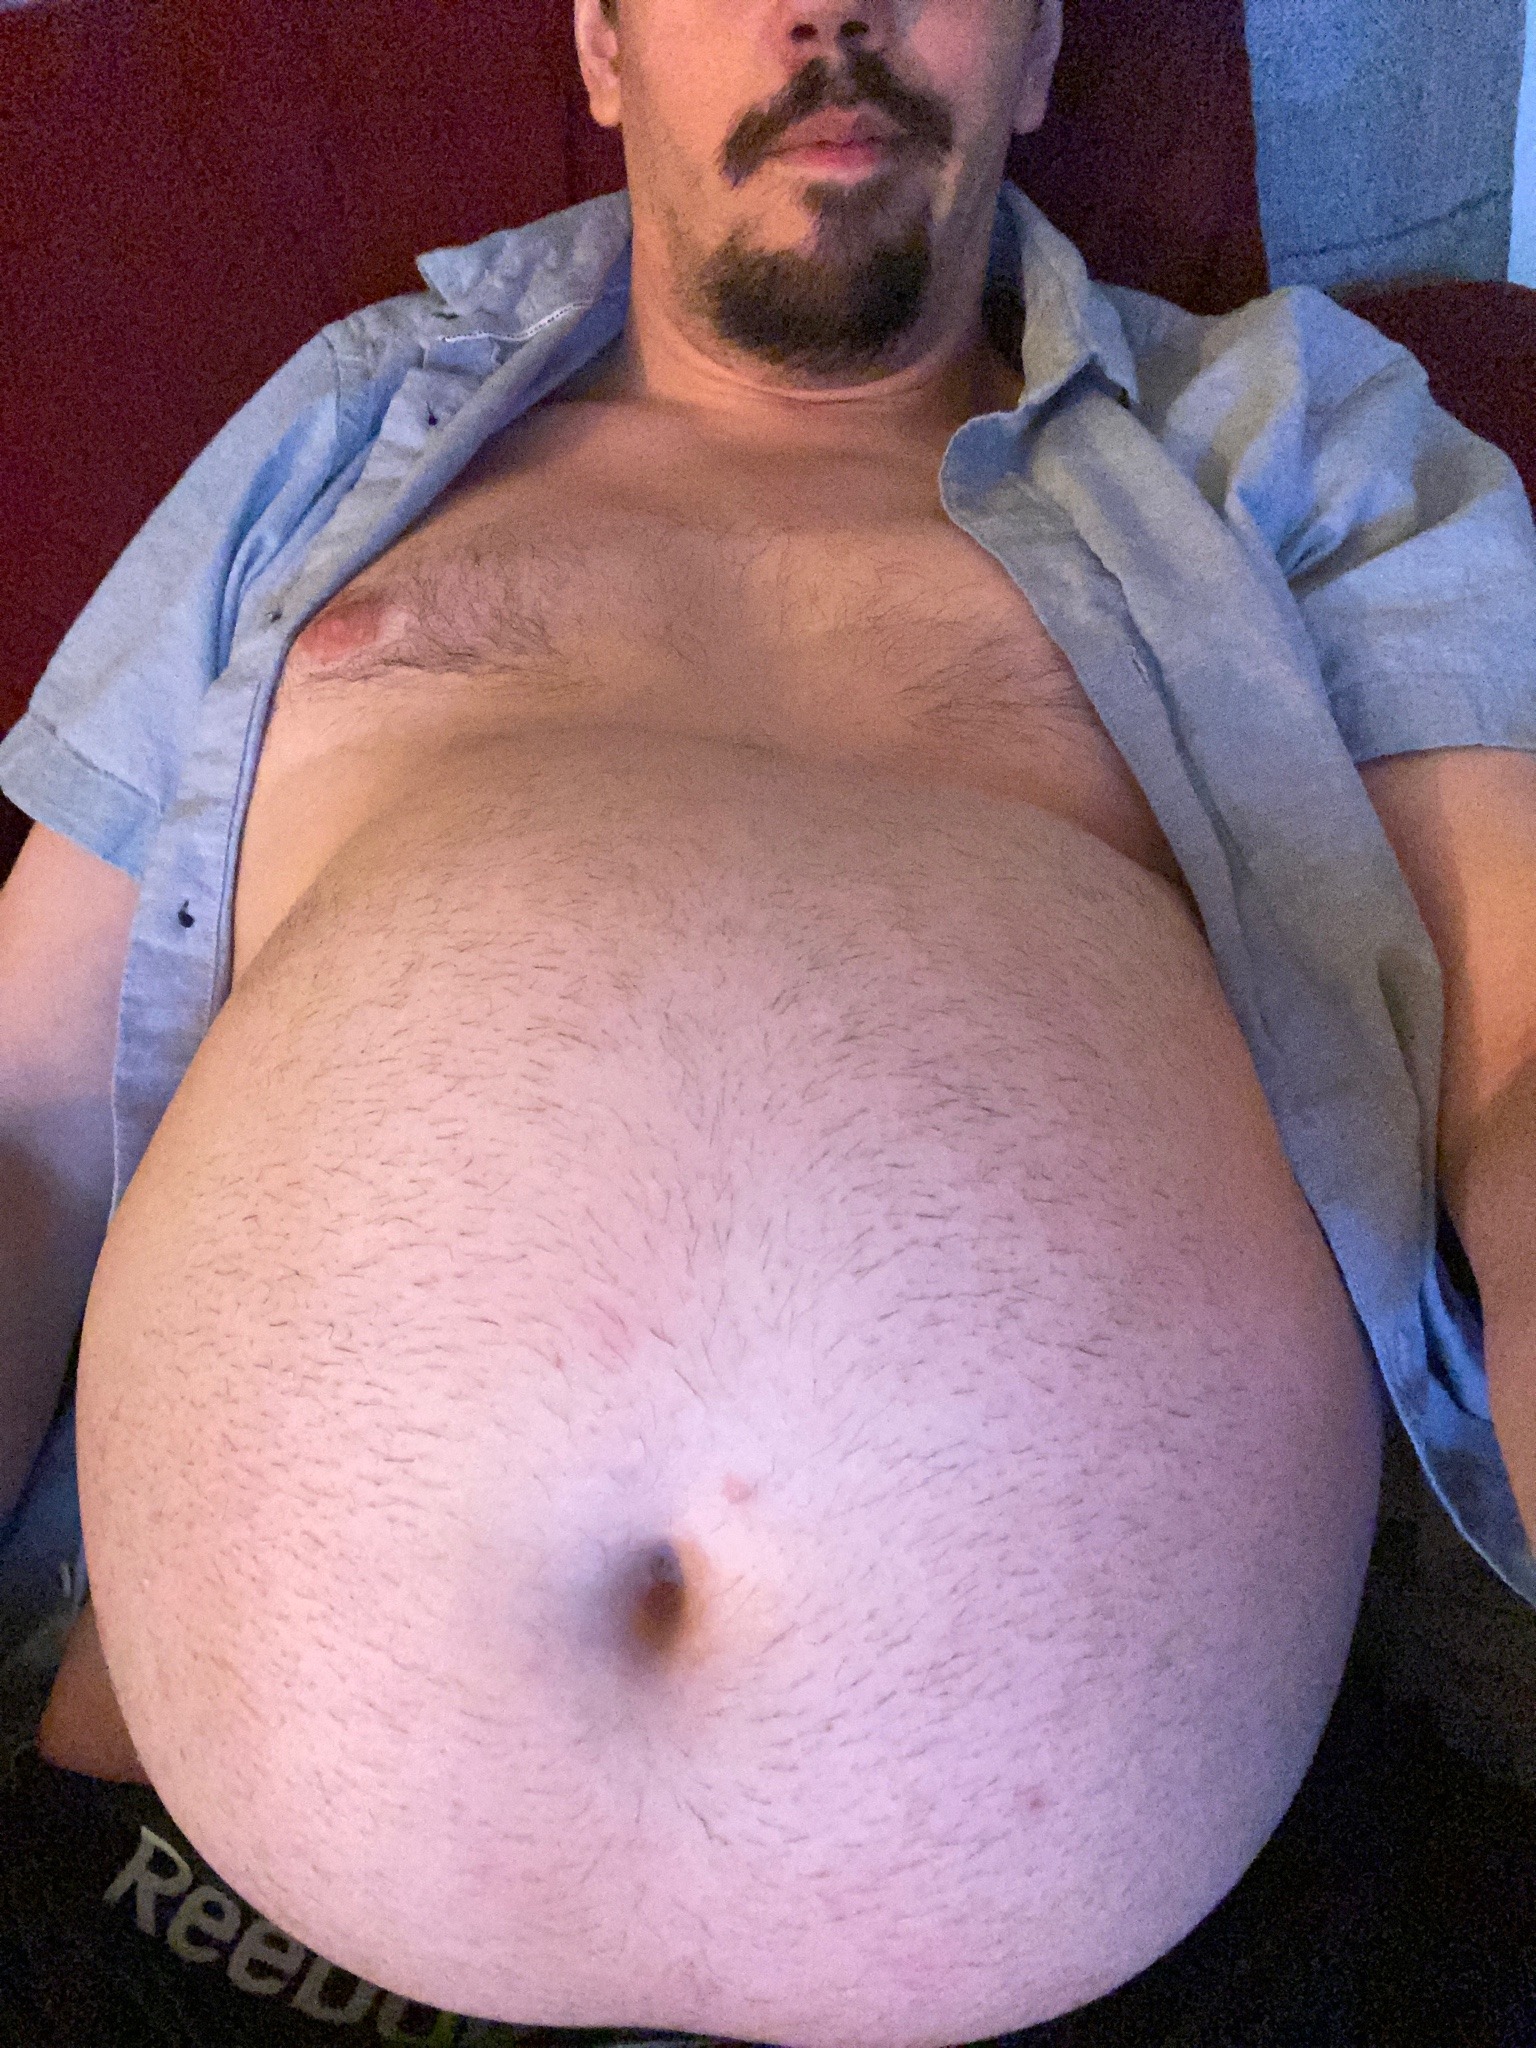 Big bear belly